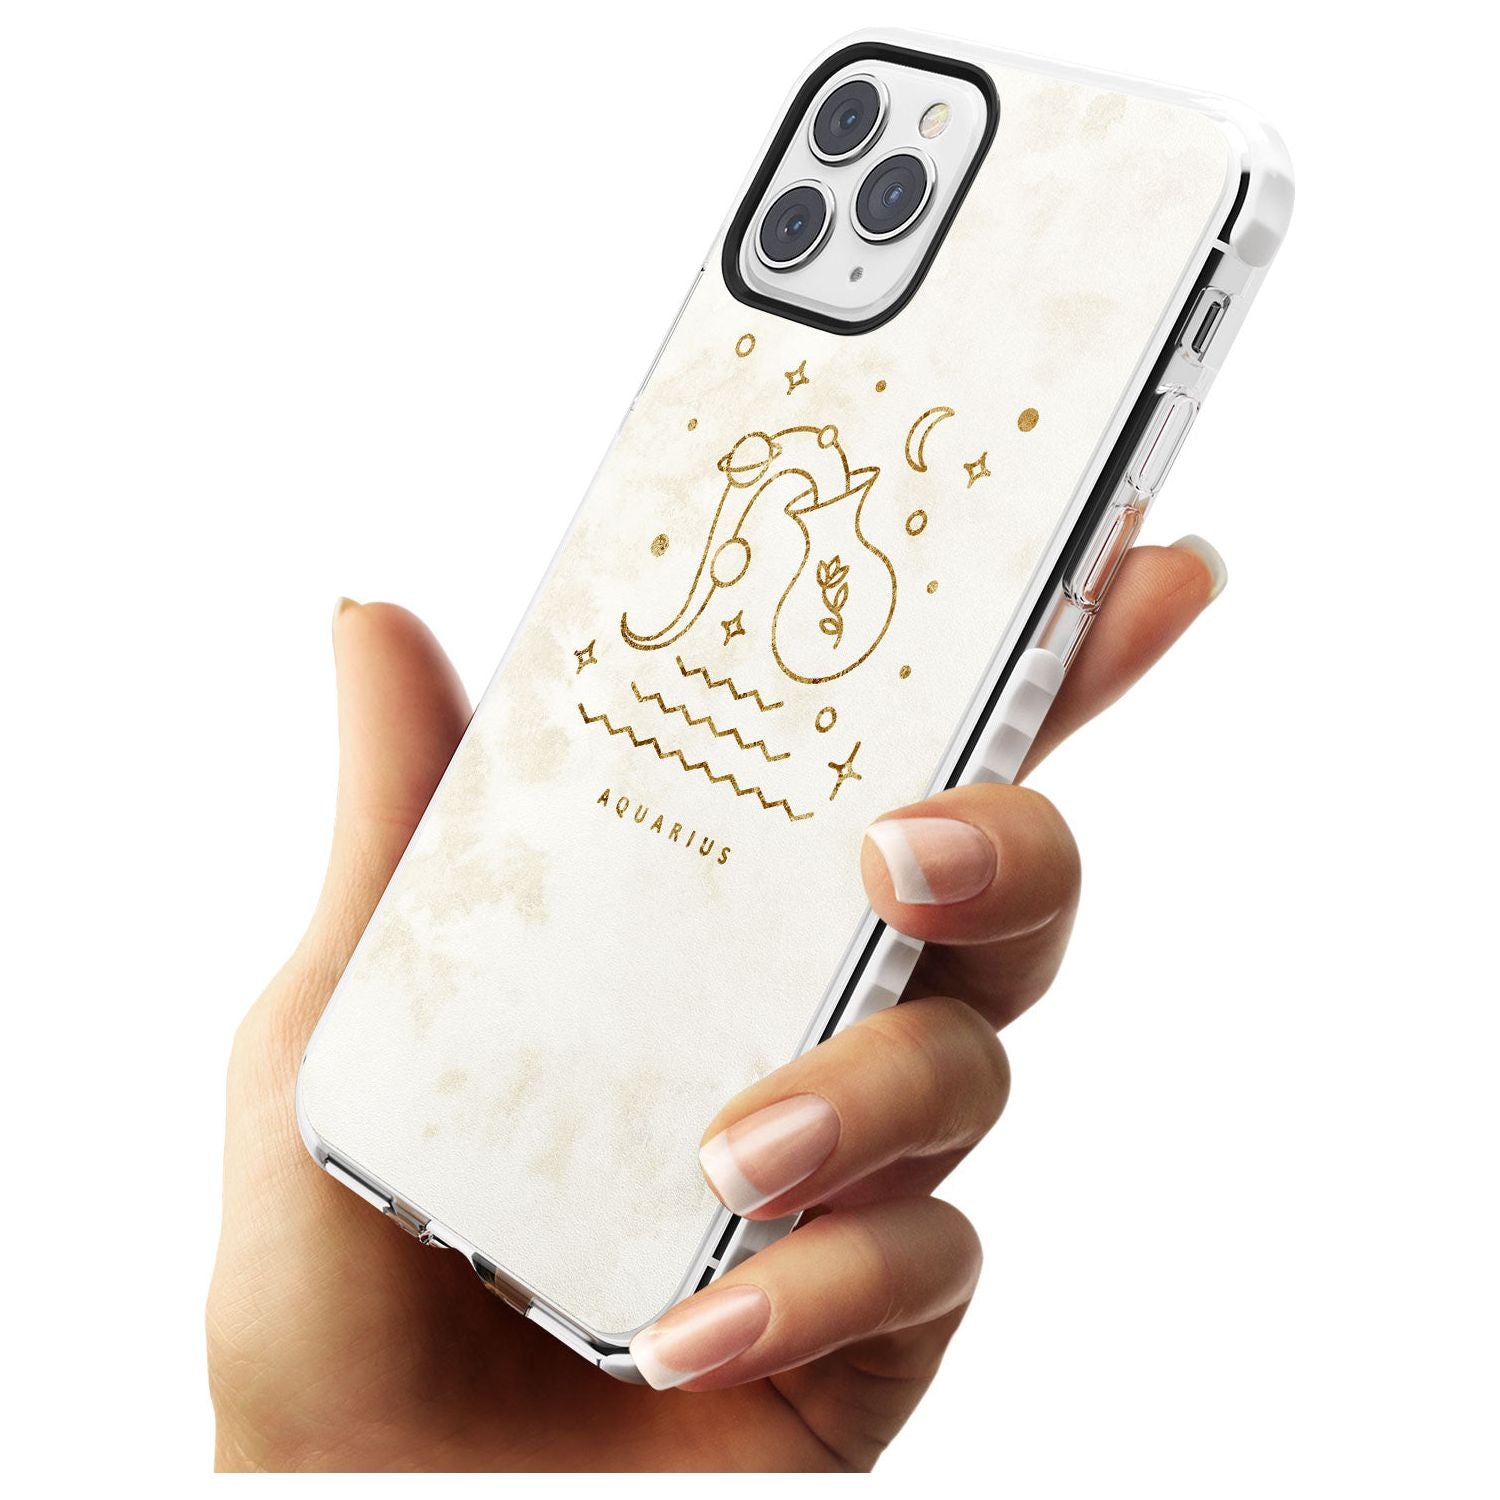 Aquarius Emblem - Solid Gold Marbled Design Impact Phone Case for iPhone 11 Pro Max